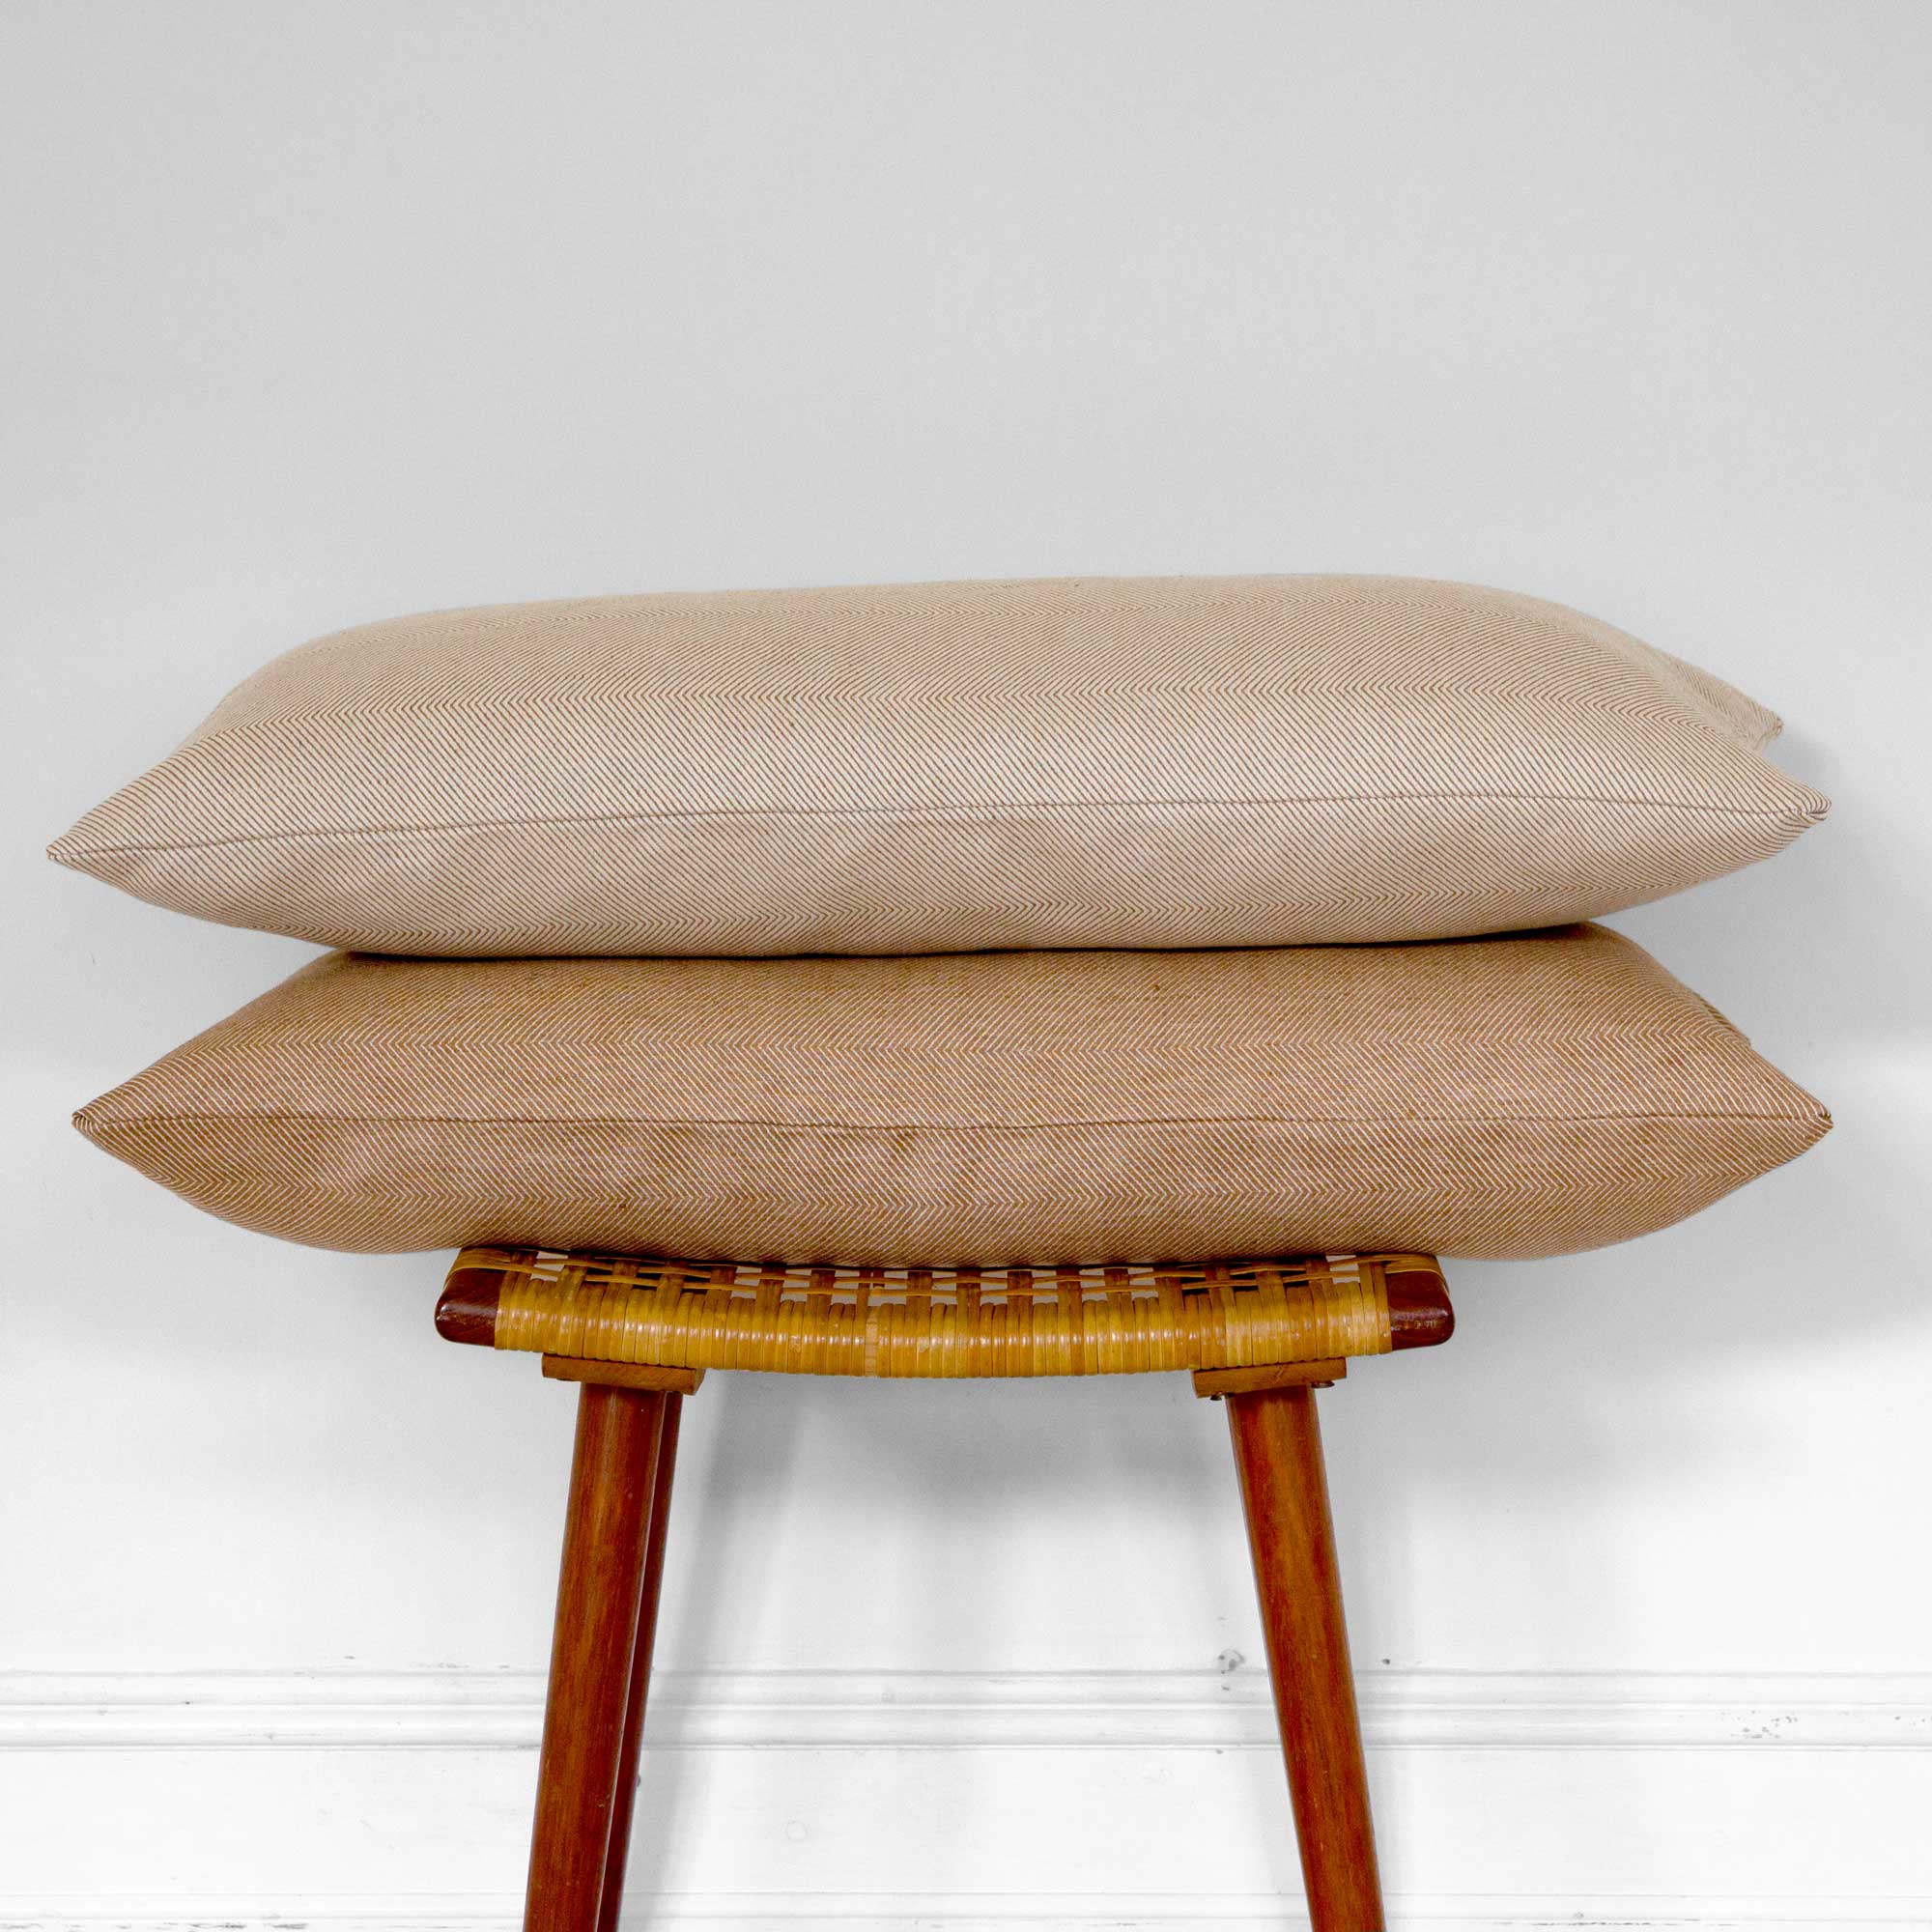 Rectangular cushions linen/cotton Light almond and Almond, design by Anne Rosenberg, RosenbergCph